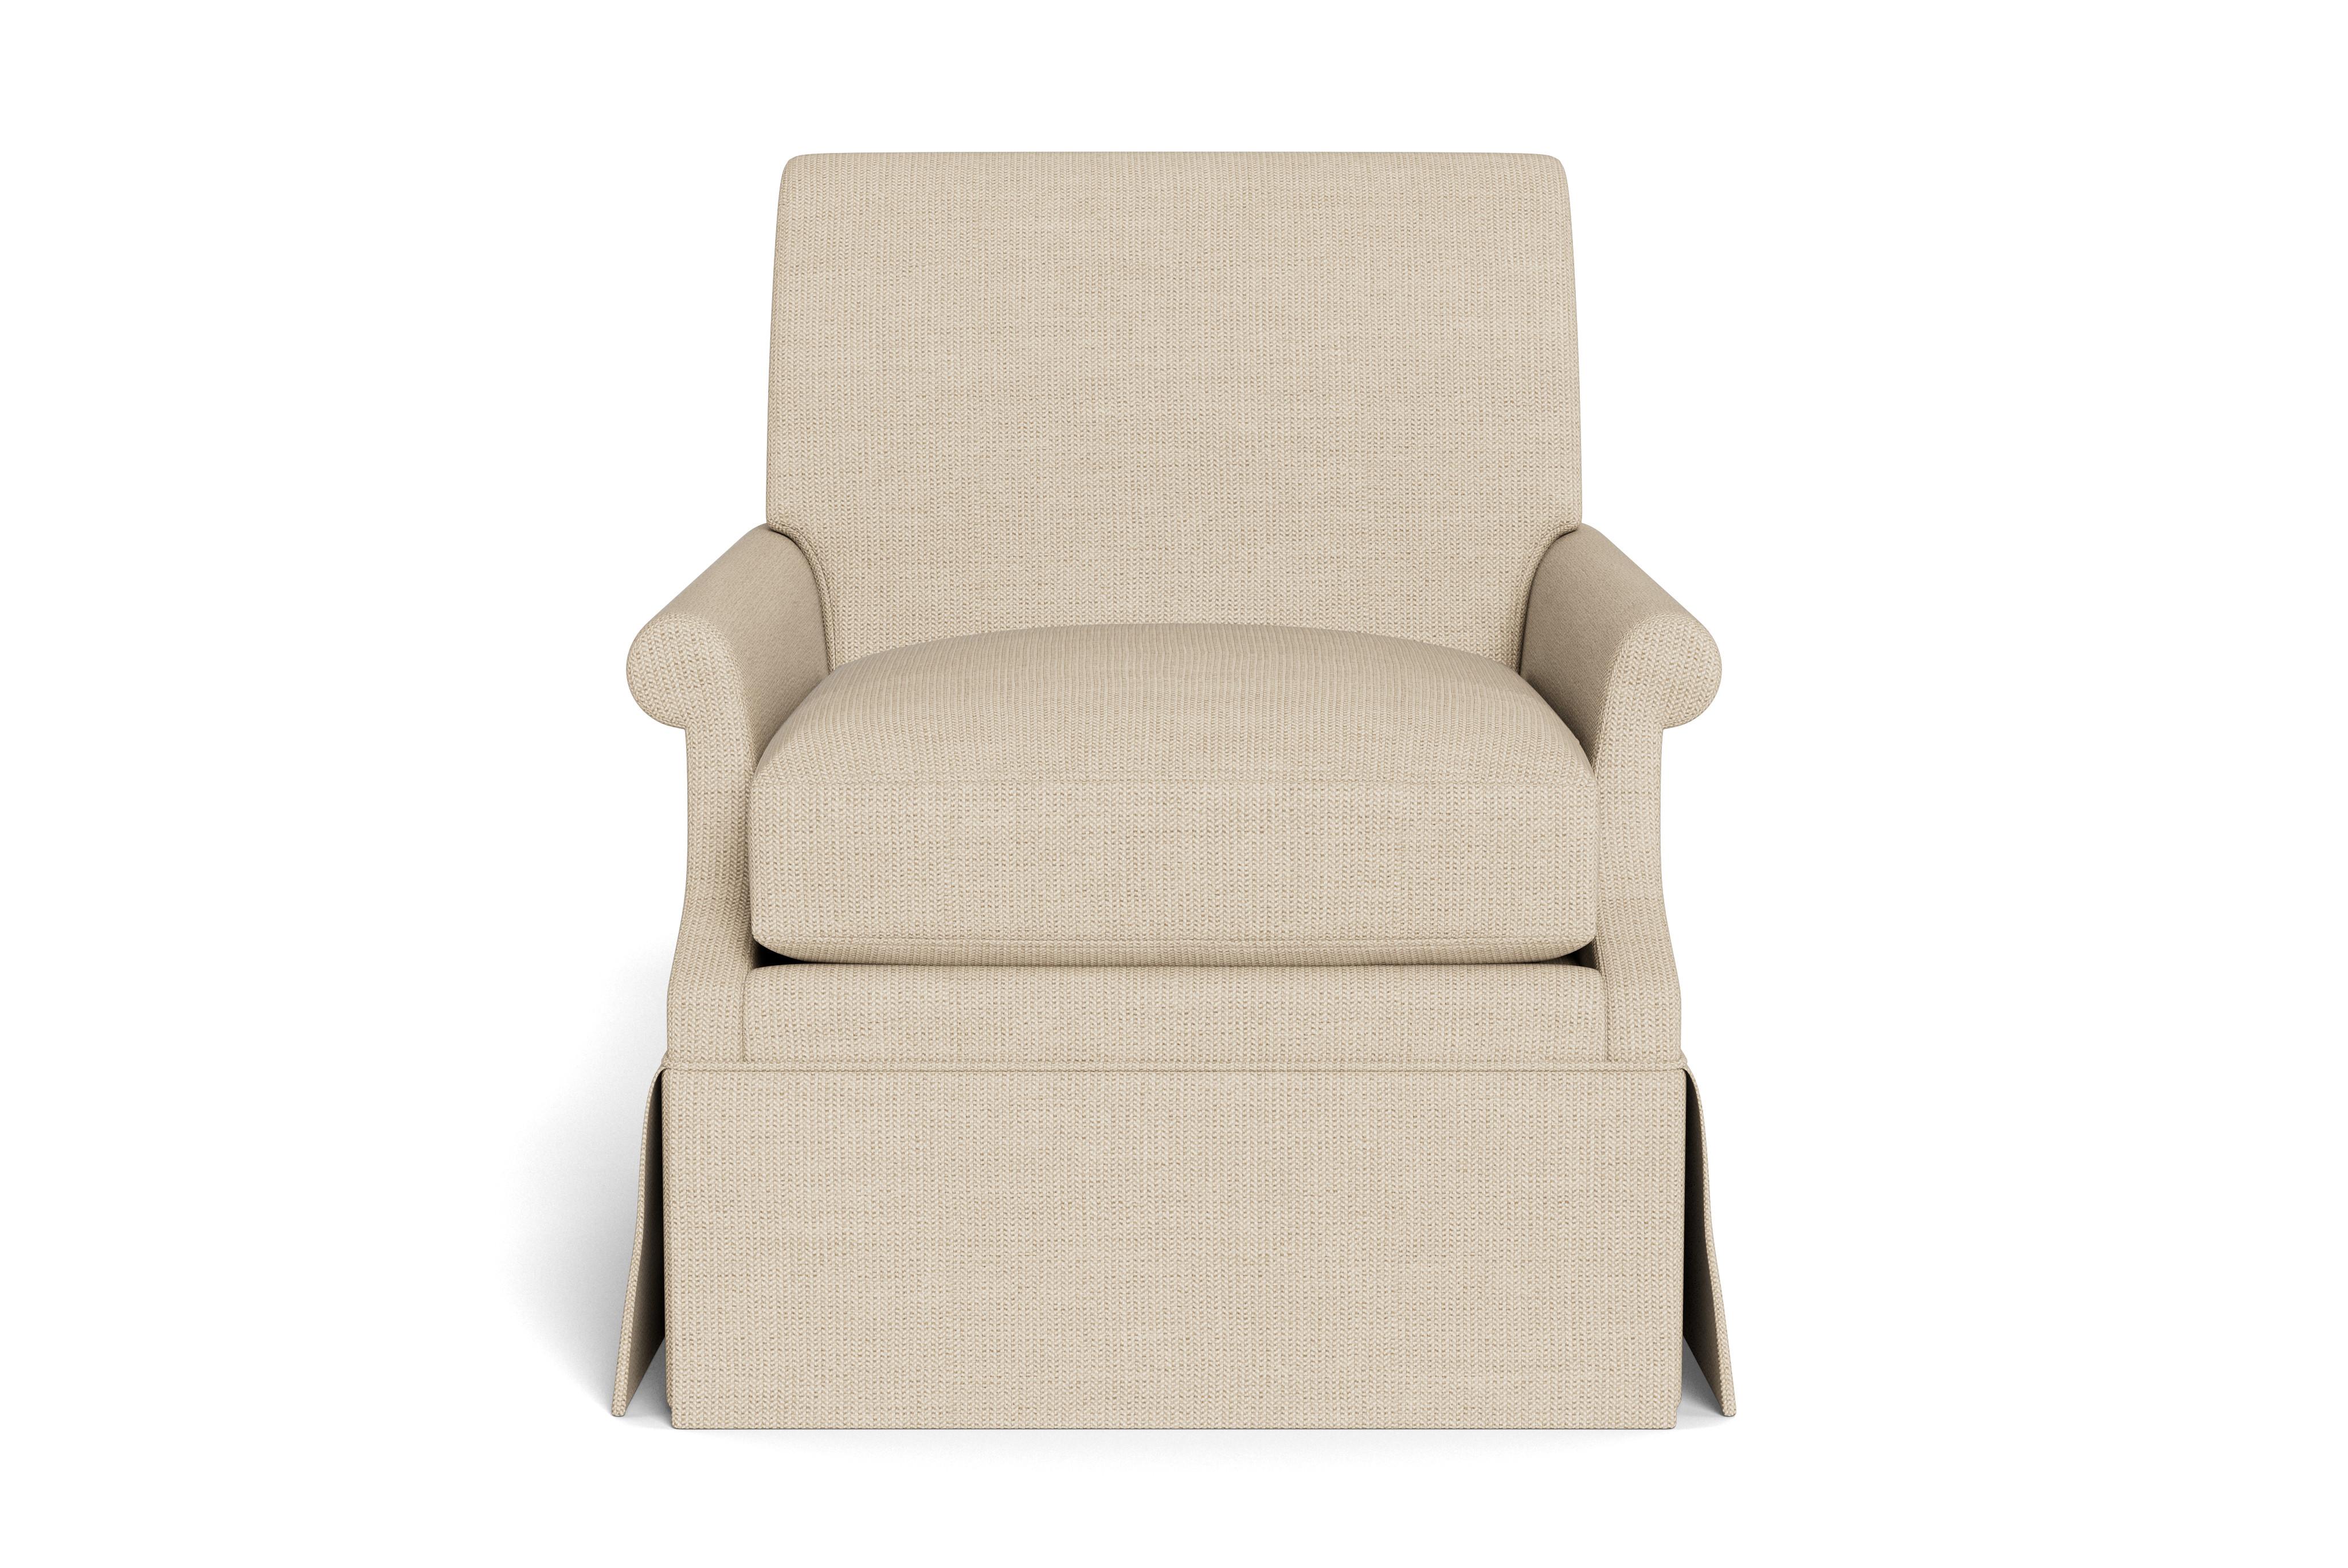 Inspiriert von der Arbeit der eleganten edwardianischen Polsterer, zeichnet sich unser Origo-Sessel durch eine elegant gerollte Rückenlehne und entsprechende Armlehnen aus. Die Kissen sind daunengefedert - einzeln gewickelte Stahlspulen mit